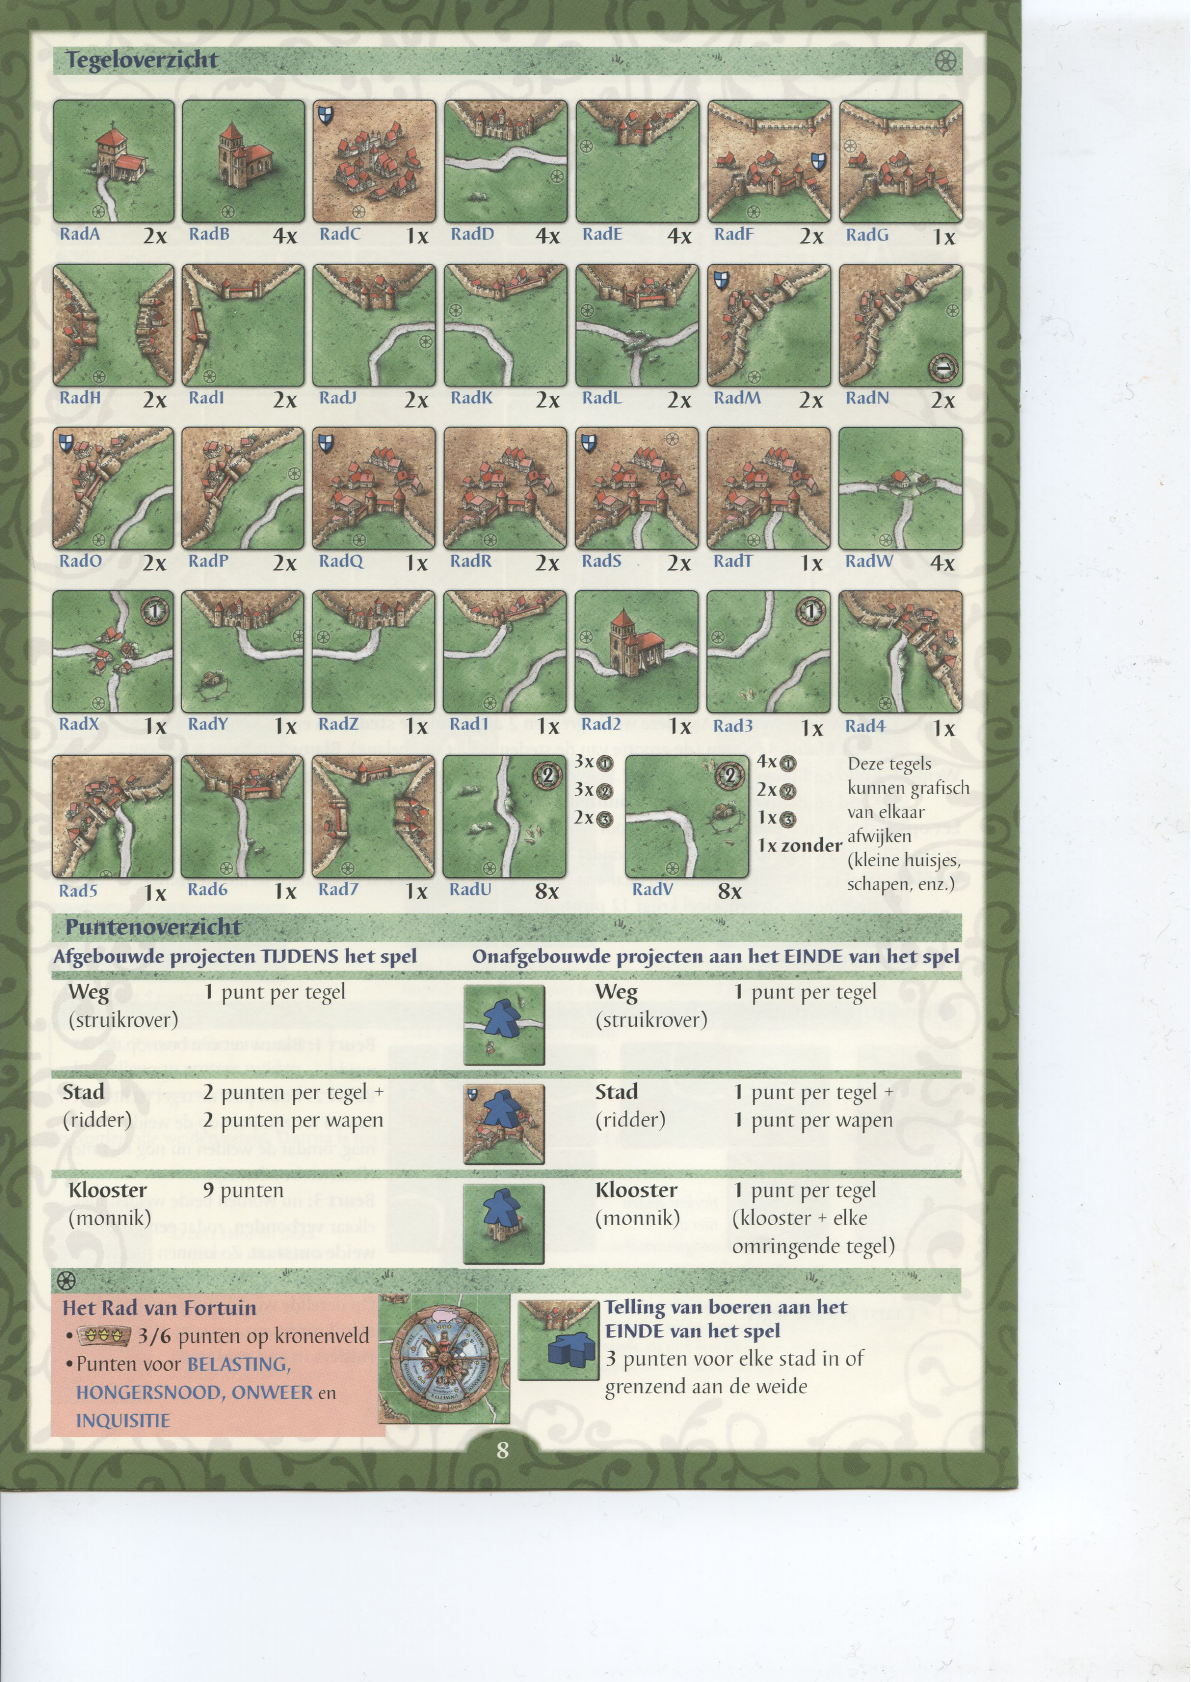 streep Gewend aan Natte sneeuw Handleiding 999 games Carcassonne - Het Rad van Fortuin (pagina 7 van 7)  (Nederlands)